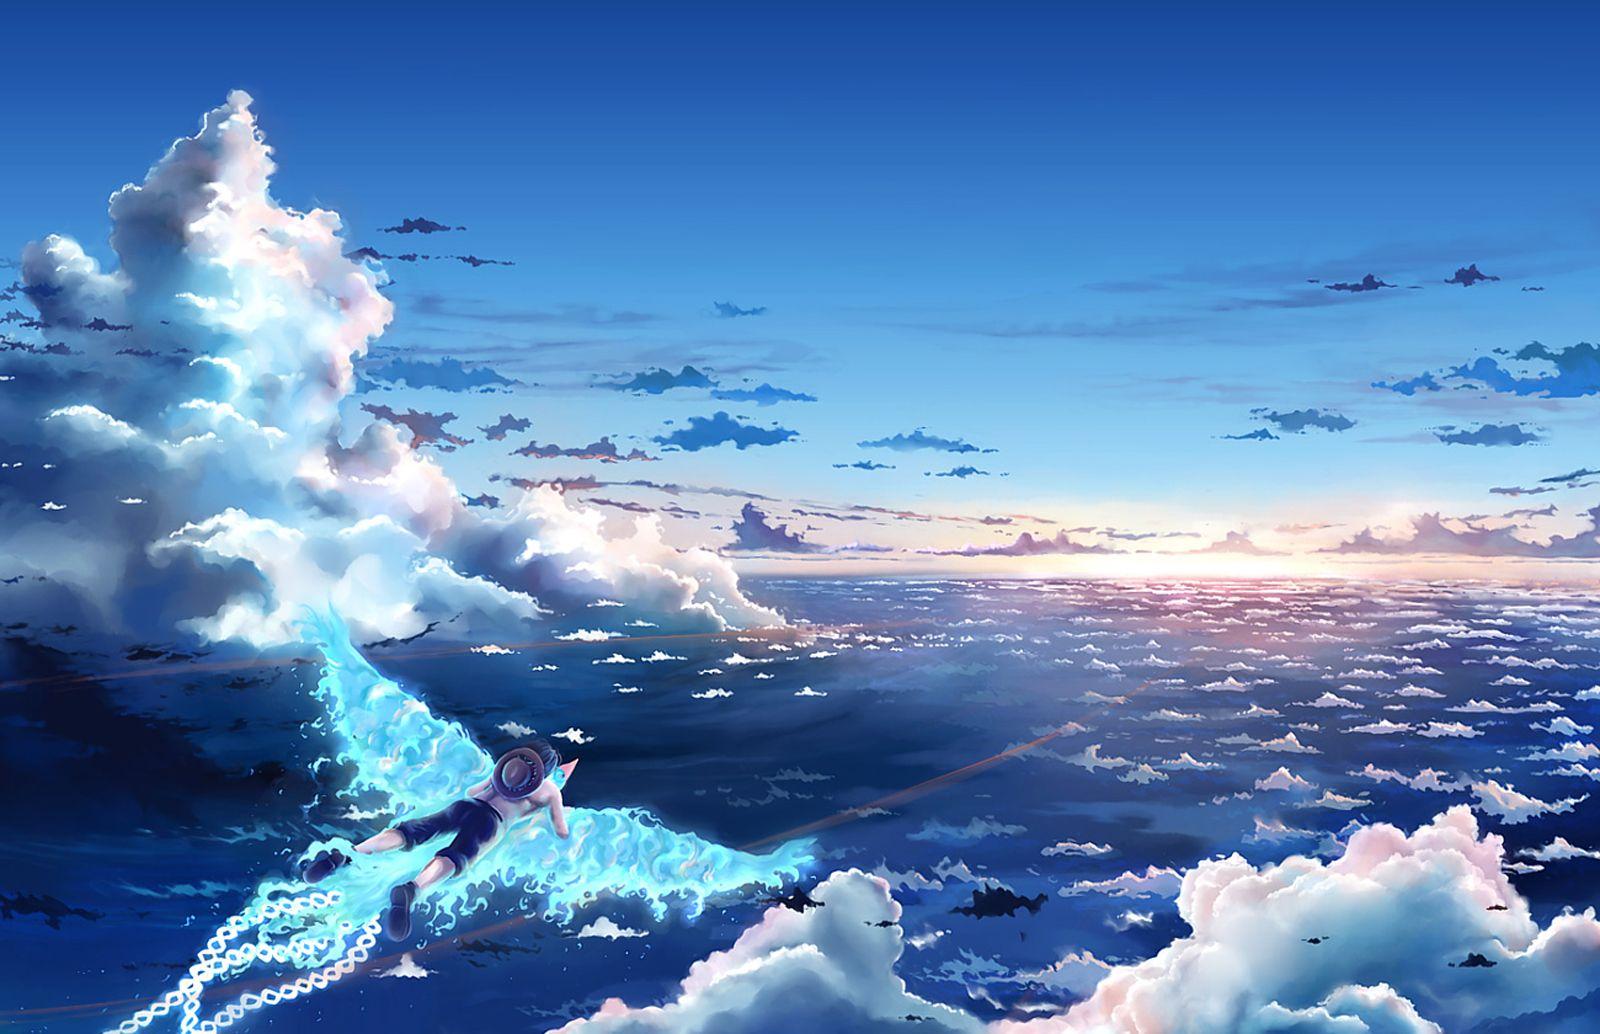 hd wallpaper: Ace Marco Phoenix Flying Sea Clouds 0575